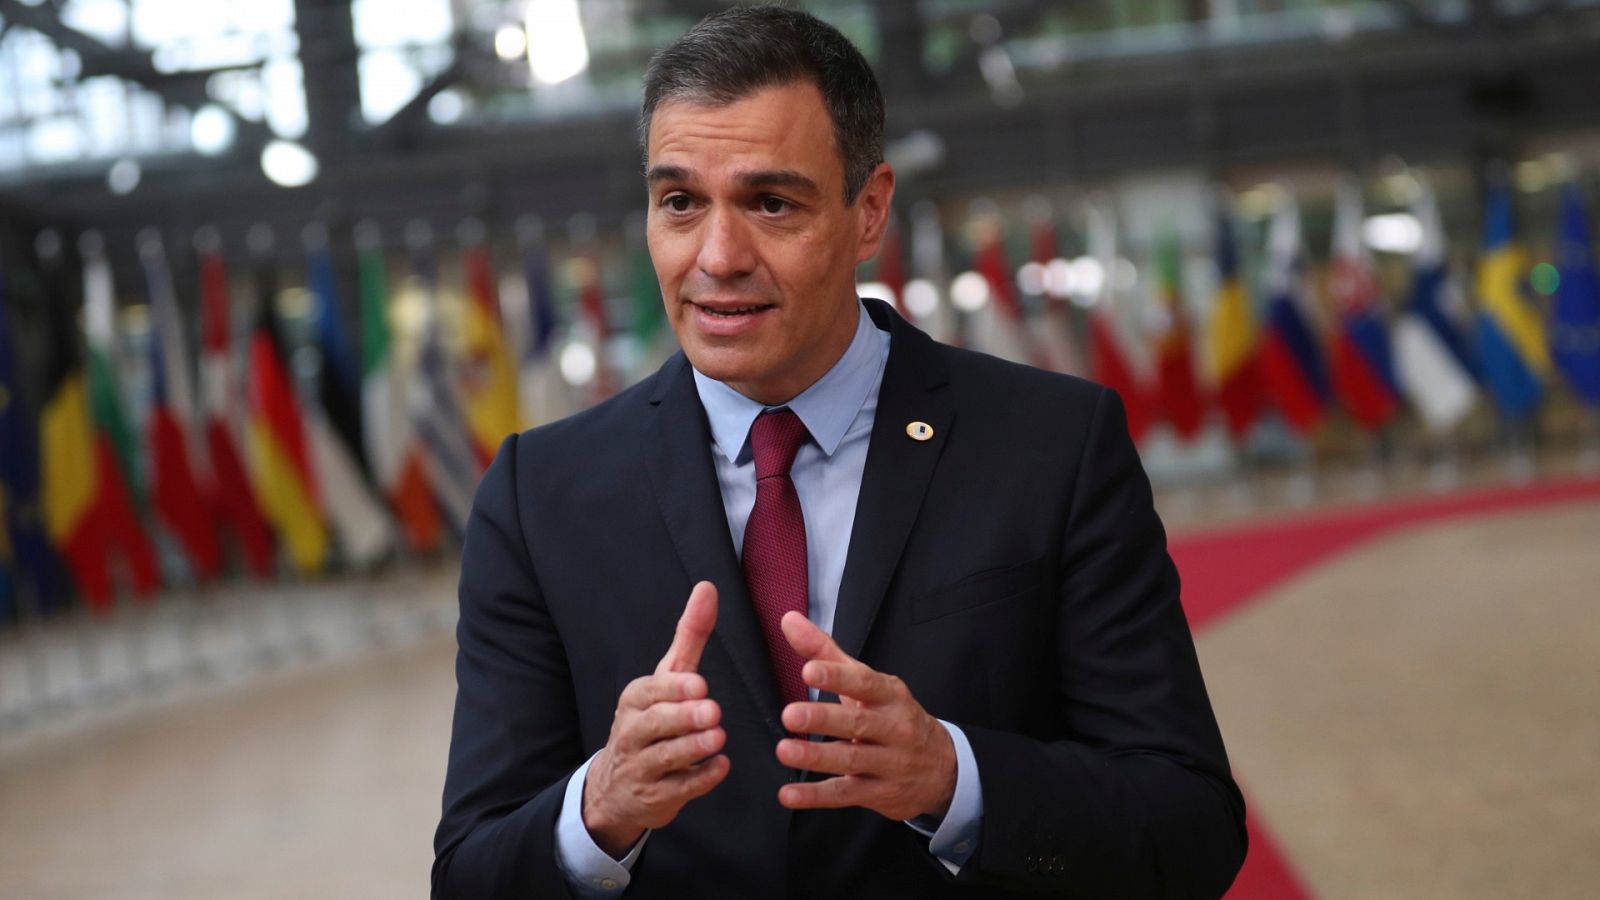 Unión Europea: Sánchez: los líderes europeos están "obligados" a acuerdo en una cumbre "histórica" para la recuperación   